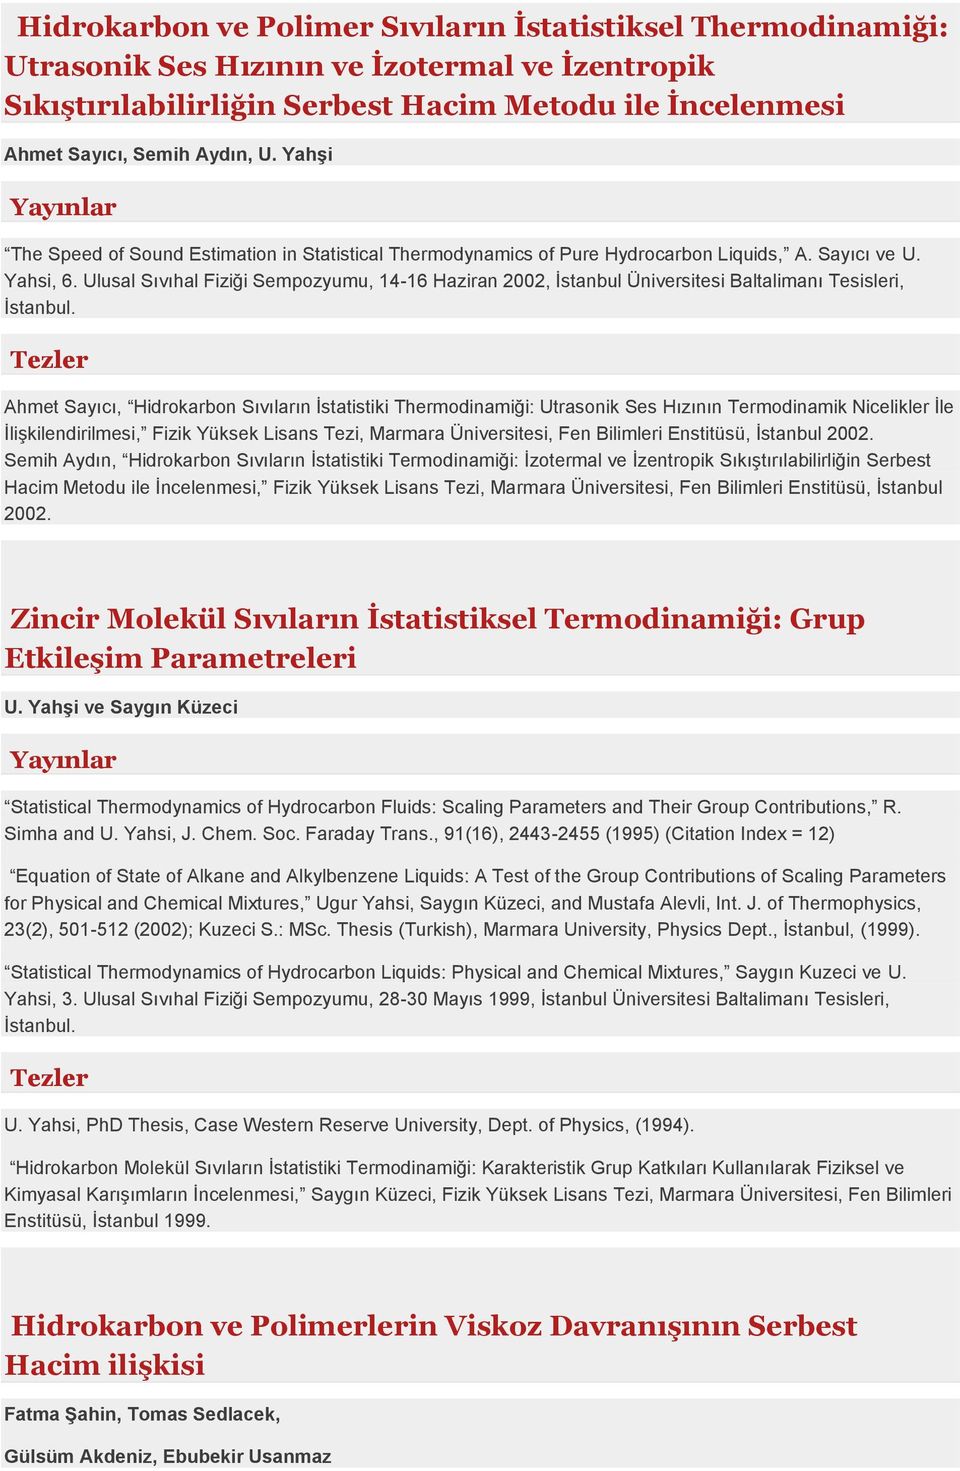 Ulusal Sıvıhal Fiziği Sempozyumu, 14-16 Haziran 2002, İstanbul Üniversitesi Baltalimanı Tesisleri, İstanbul.